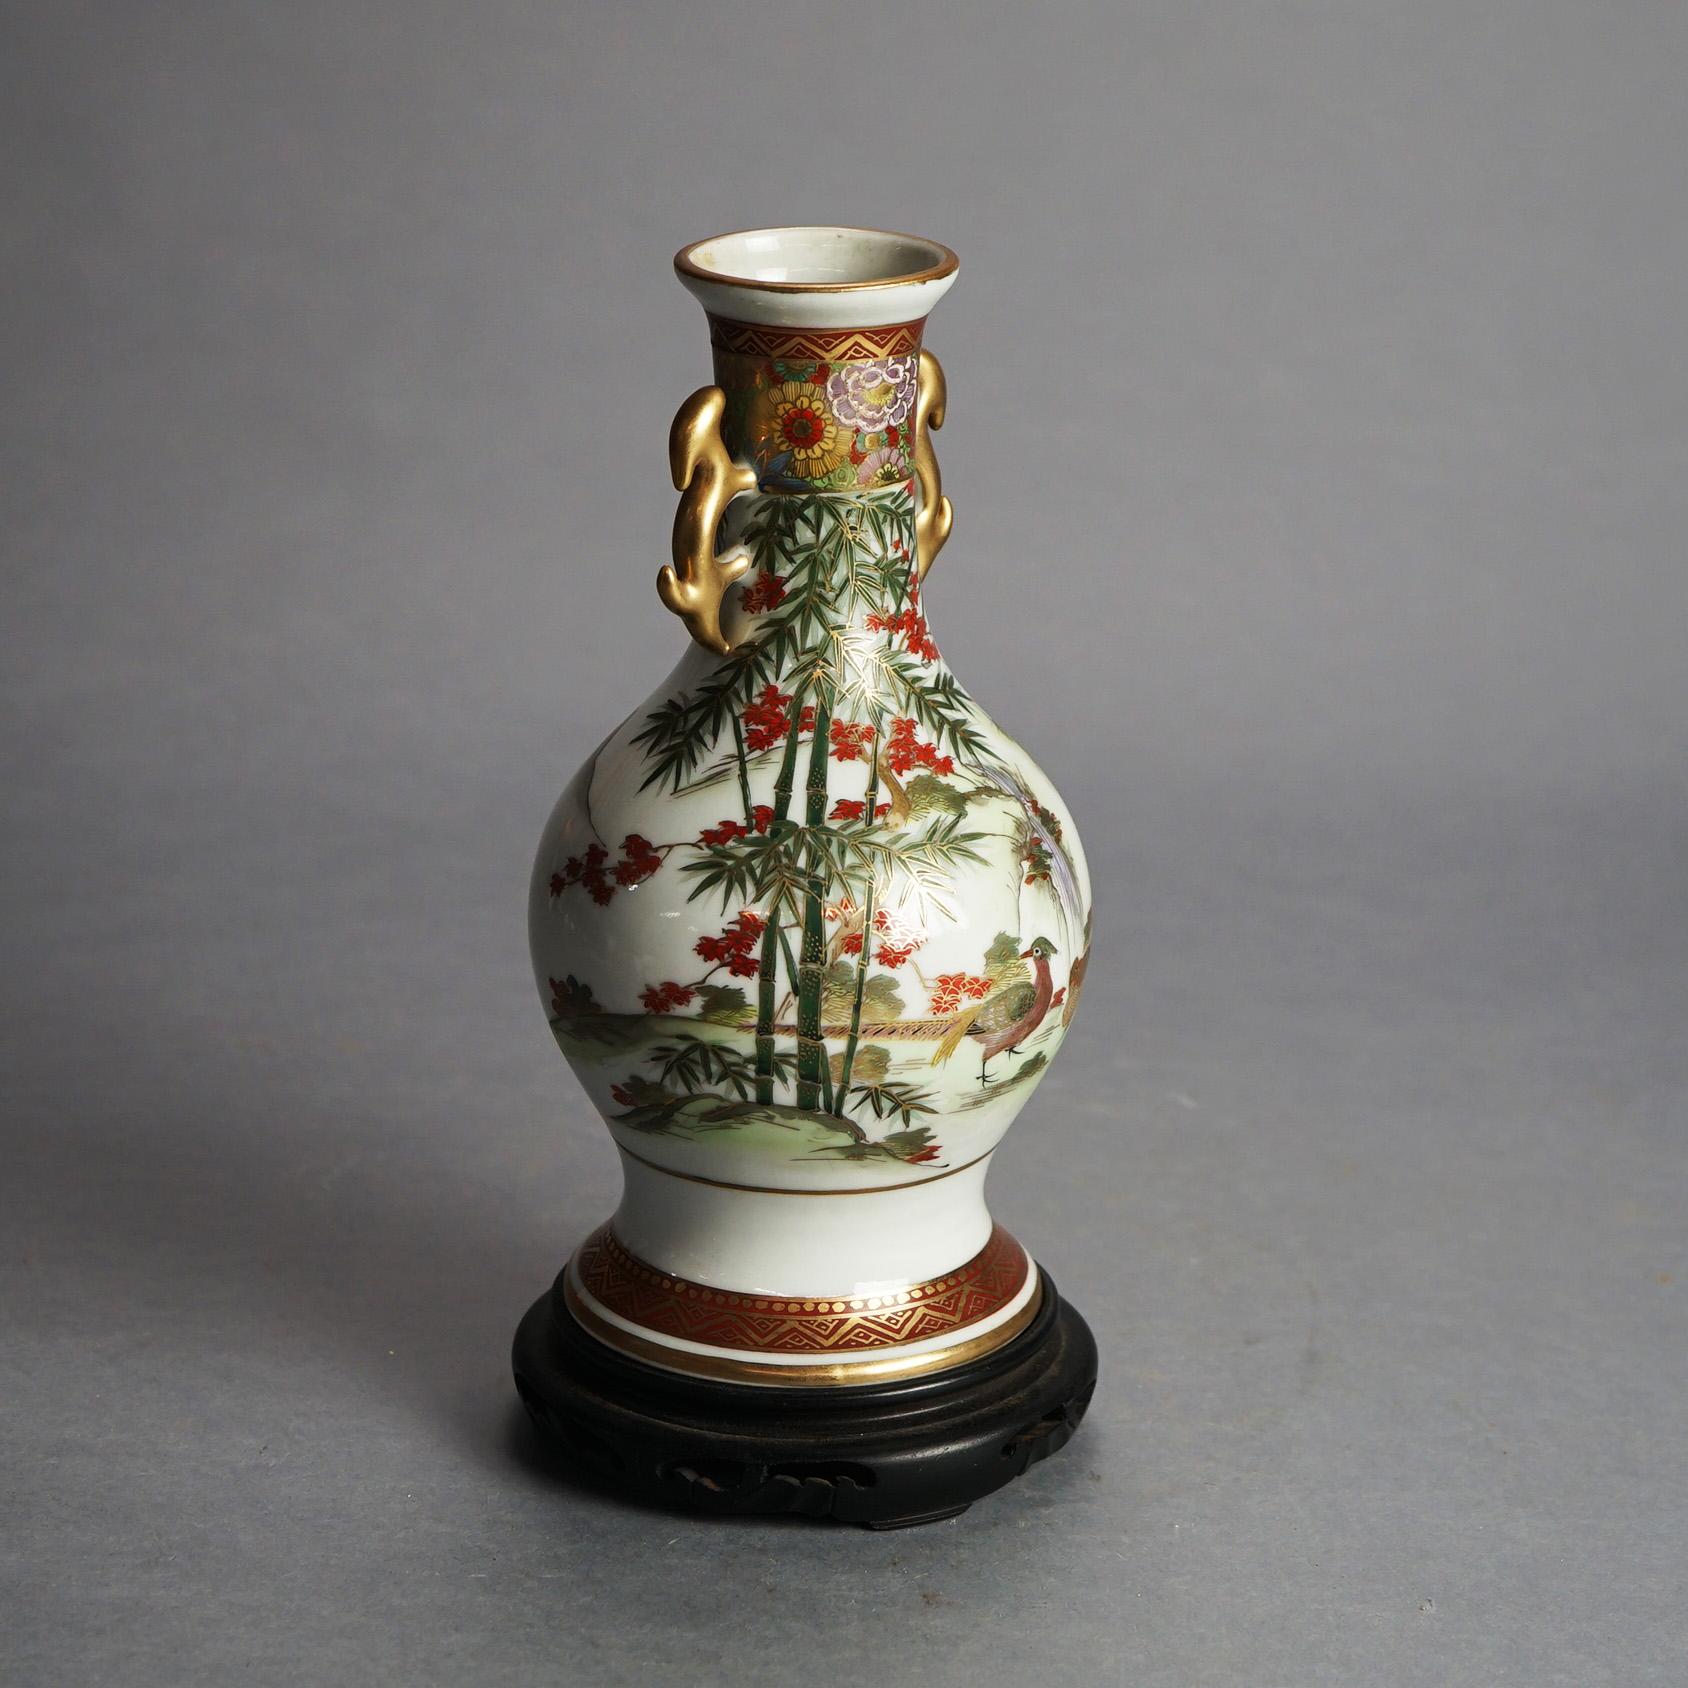 Antike japanische Satsuma Hand gemalt & vergoldet Porzellan Doppelgriff Vase mit Garten-Szene auf Holz Stand C1920

Maße - 11 